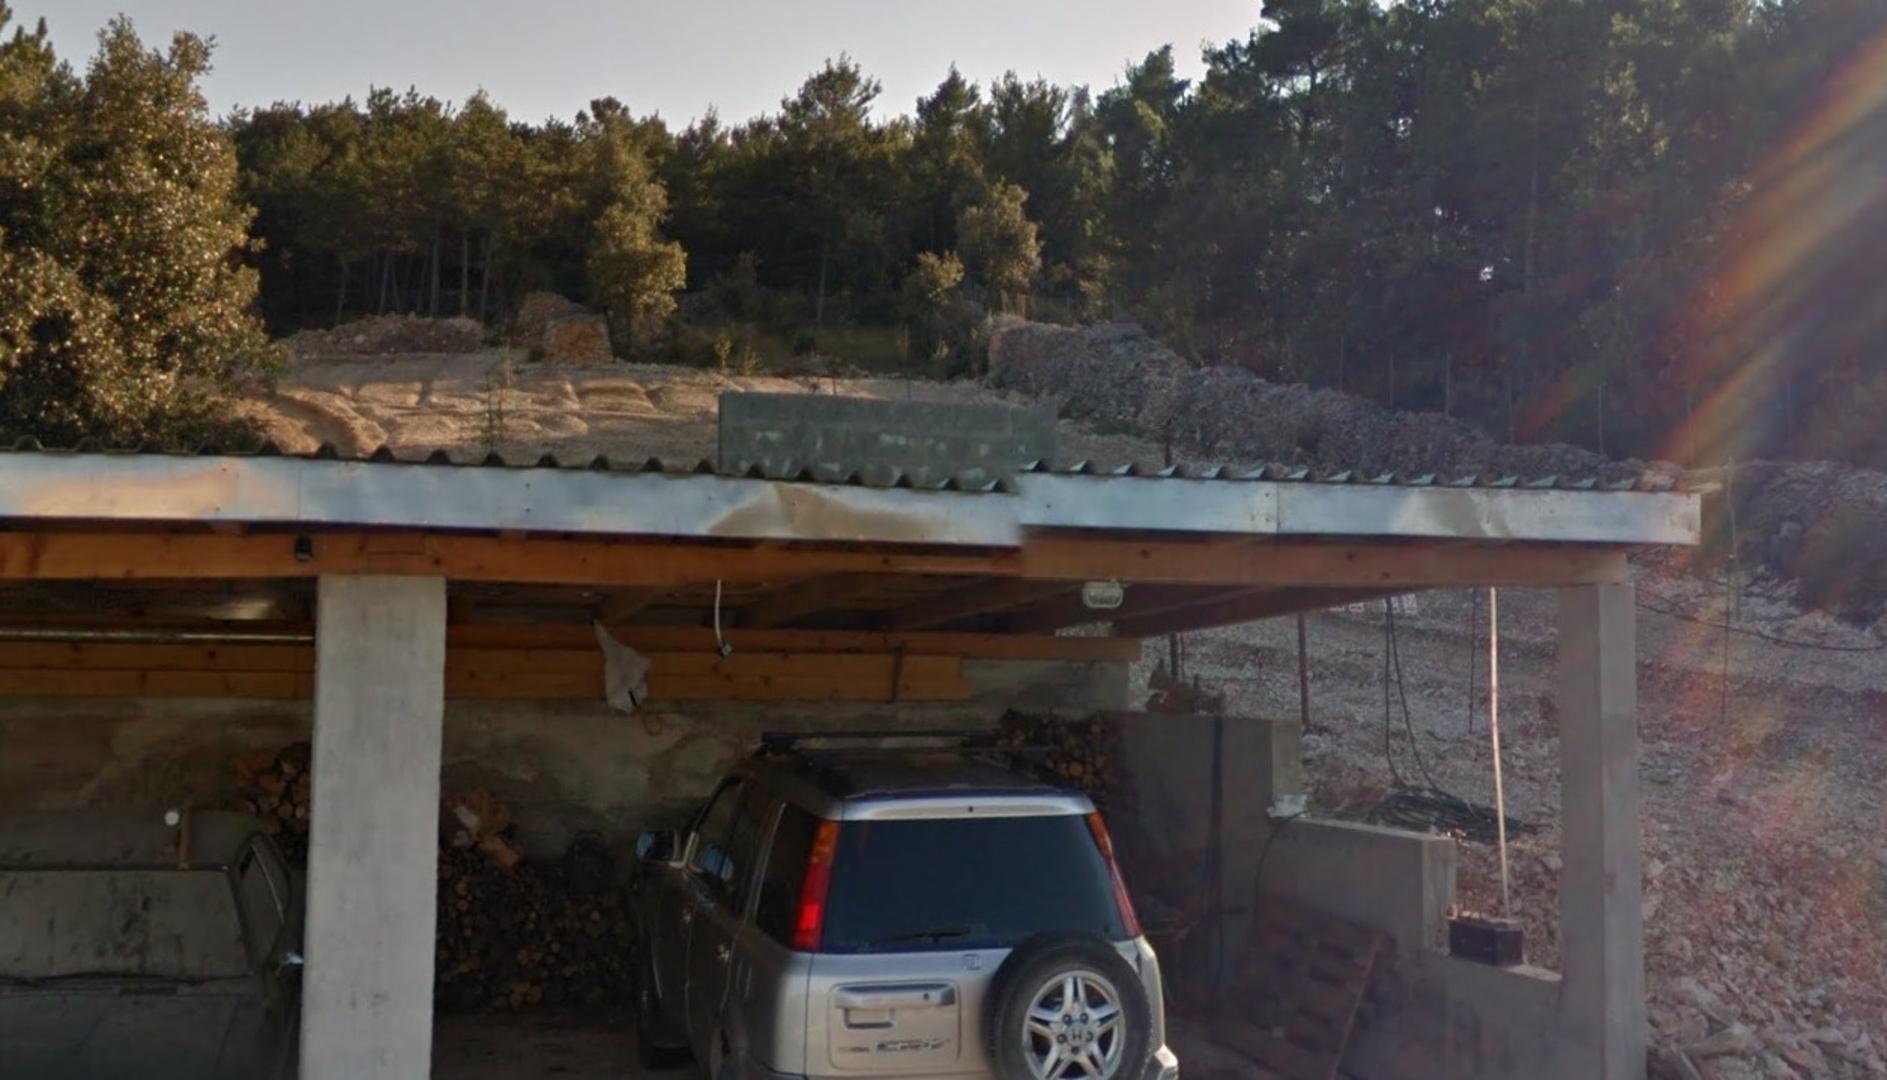 Snimke vile i parcele s nadstrešnicom za vozila od studenoga 2011. pokazuju kameniti “pašnjak” tada još bez staje